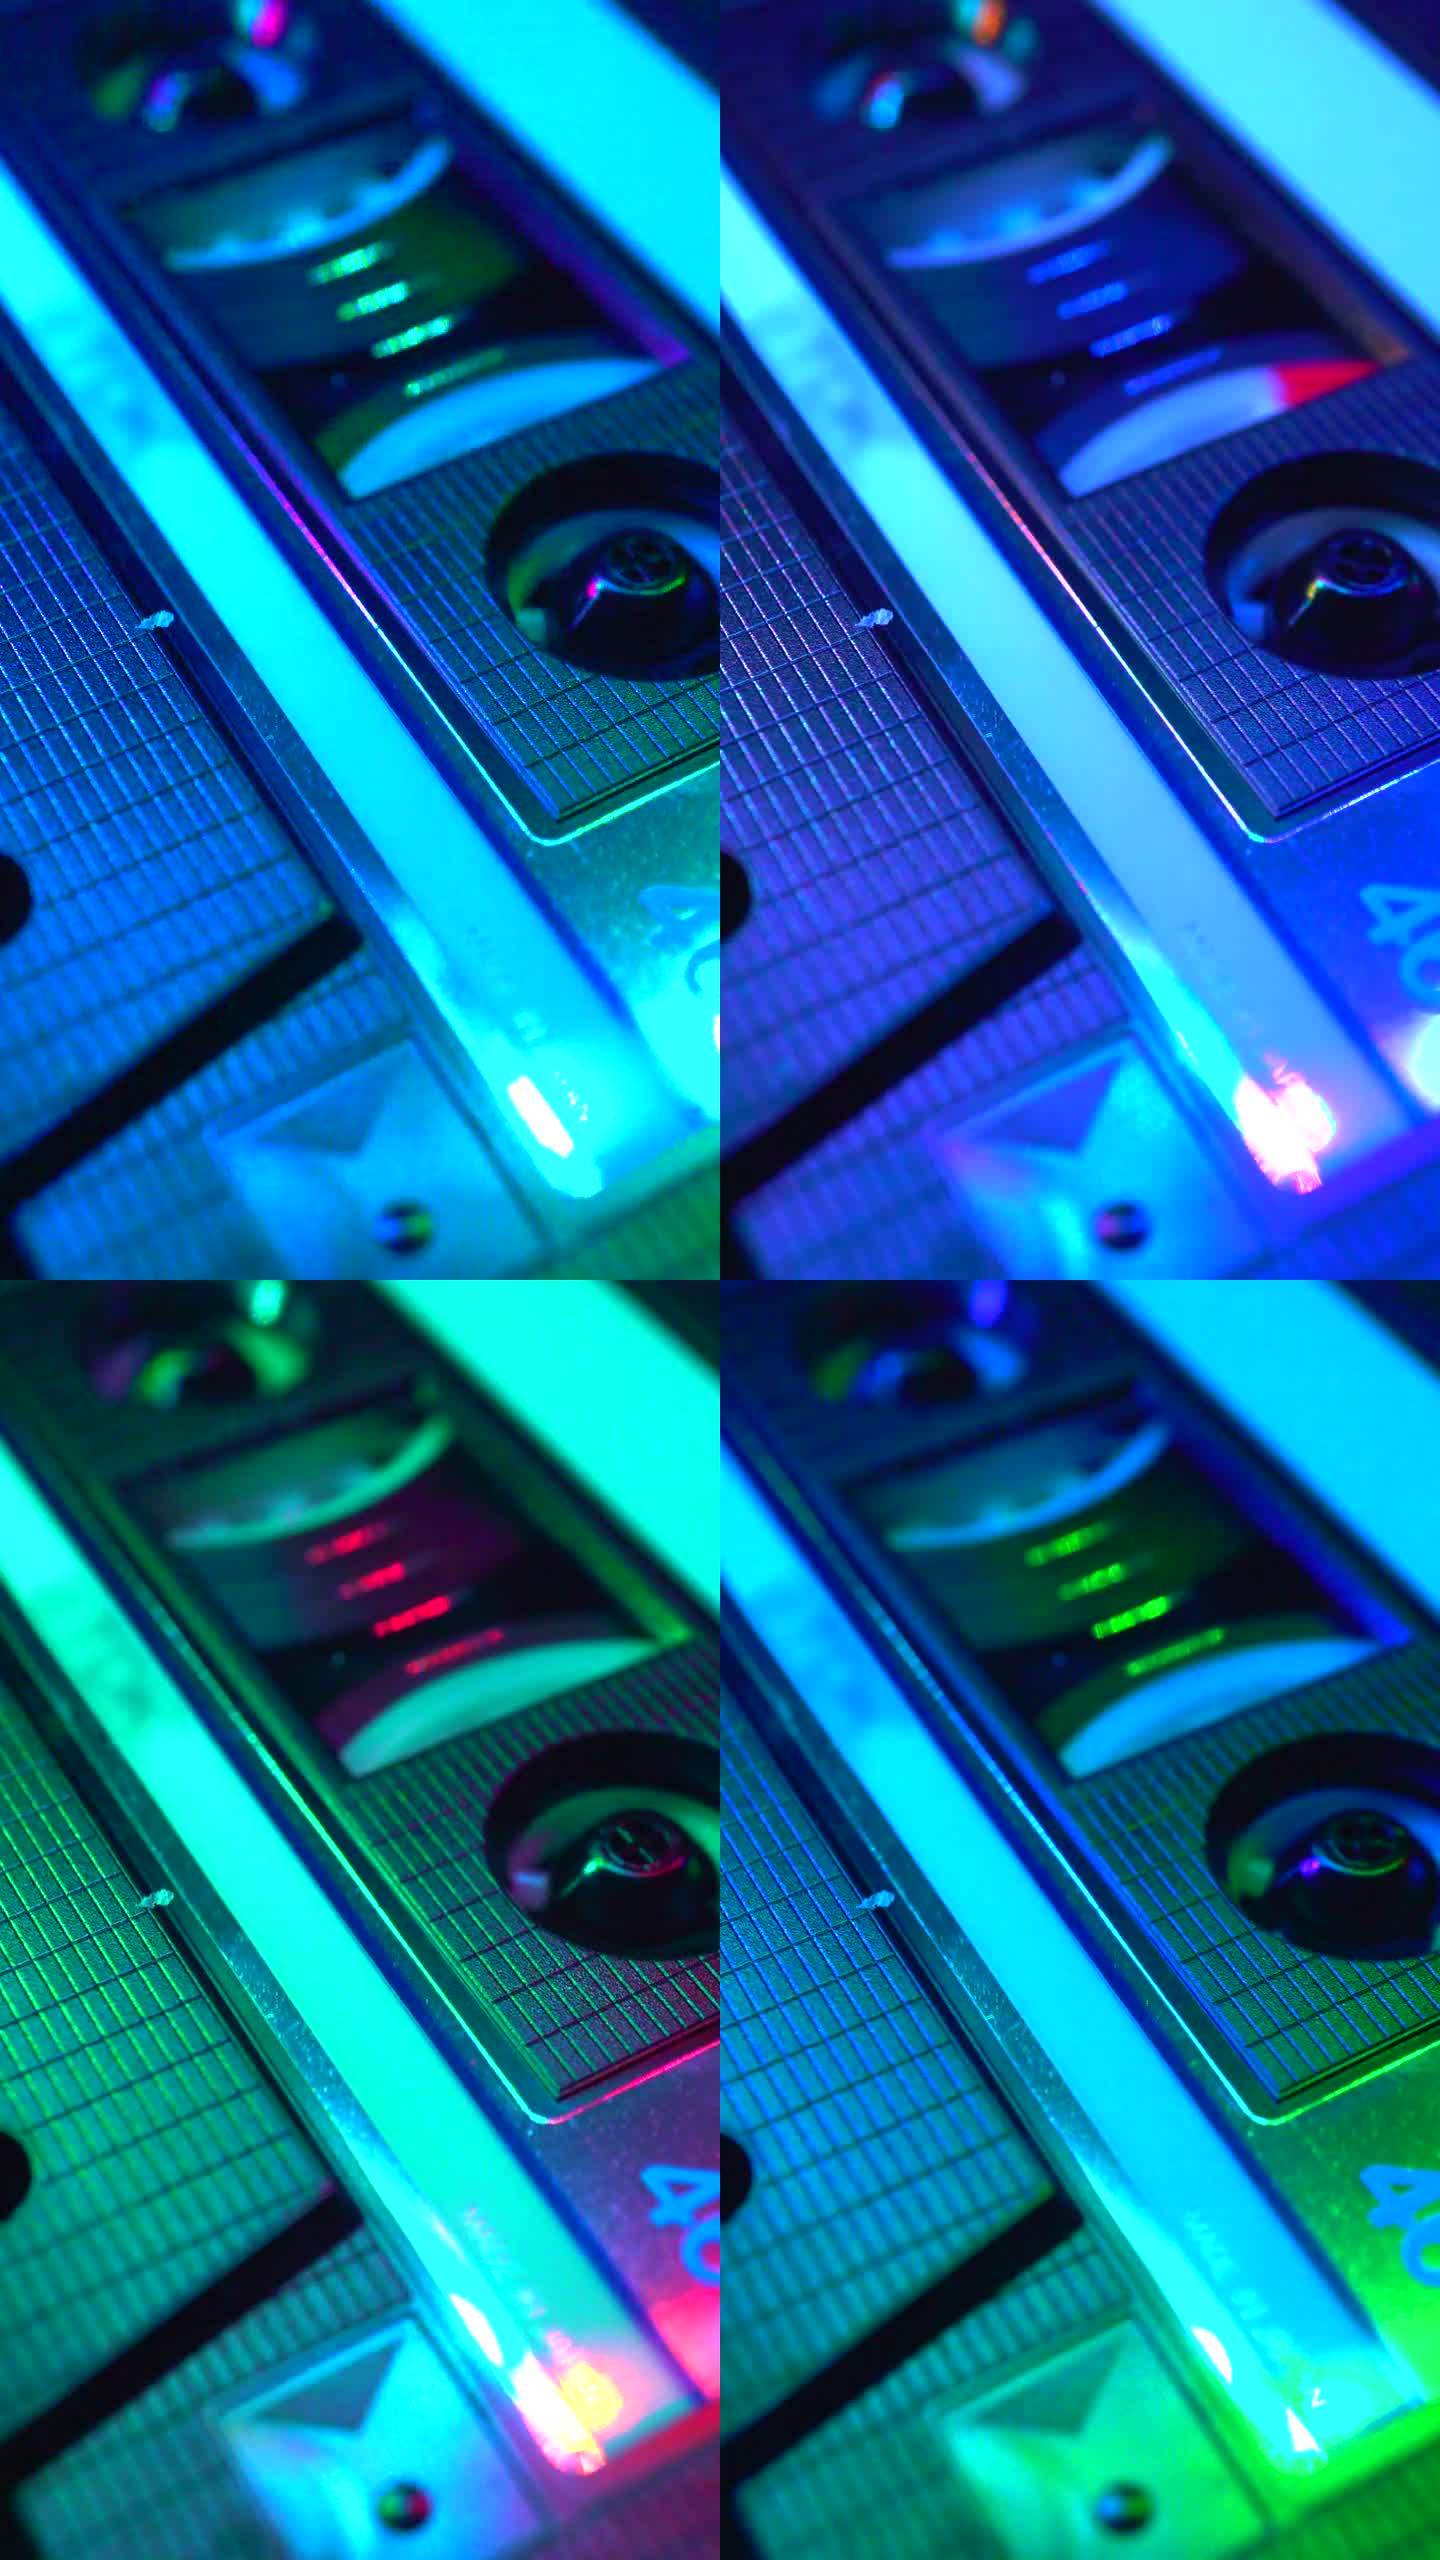 俱乐部里五颜六色的灯光照亮了正在播放的盒式磁带